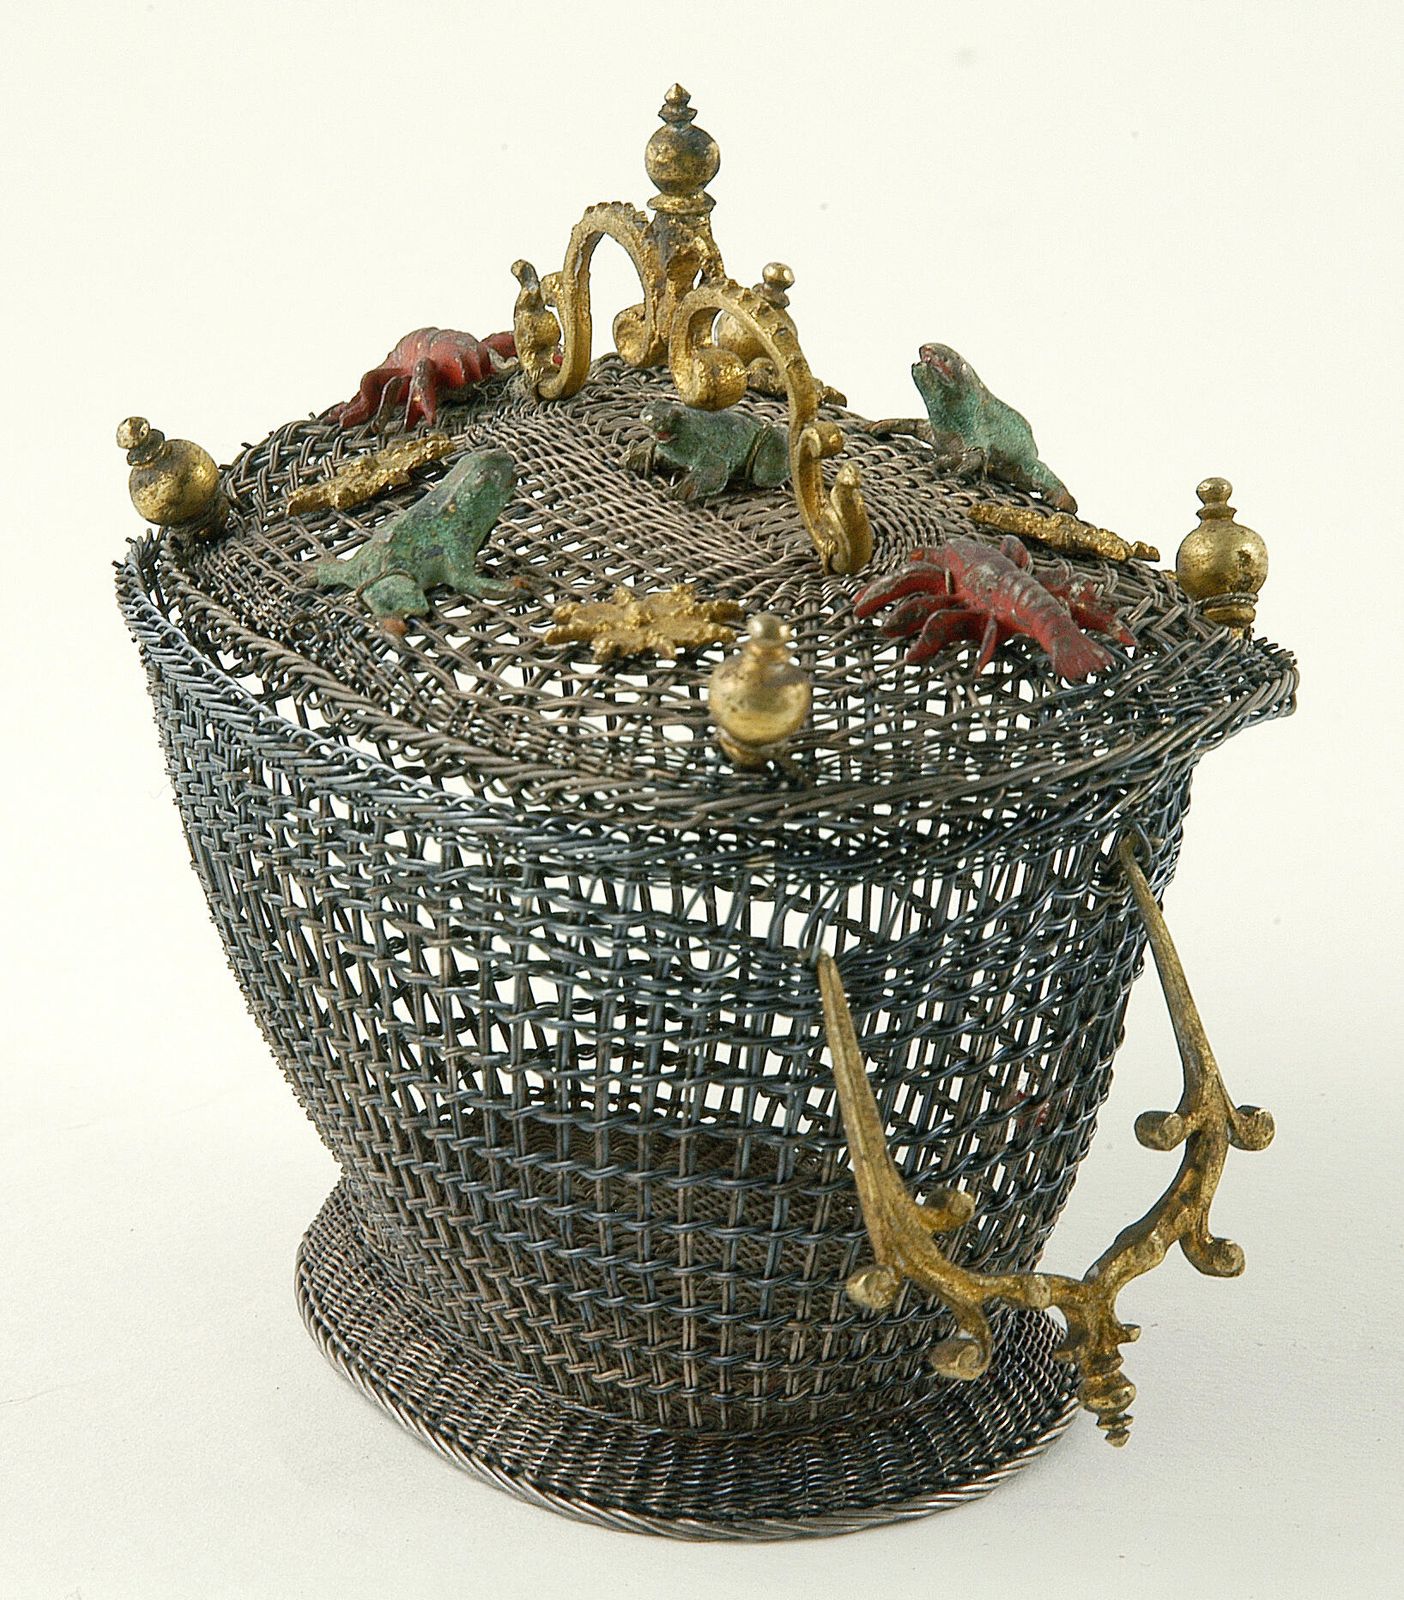 Körbchen aus Silberdraht mit farbig gefassten Fröschen und Krebsen